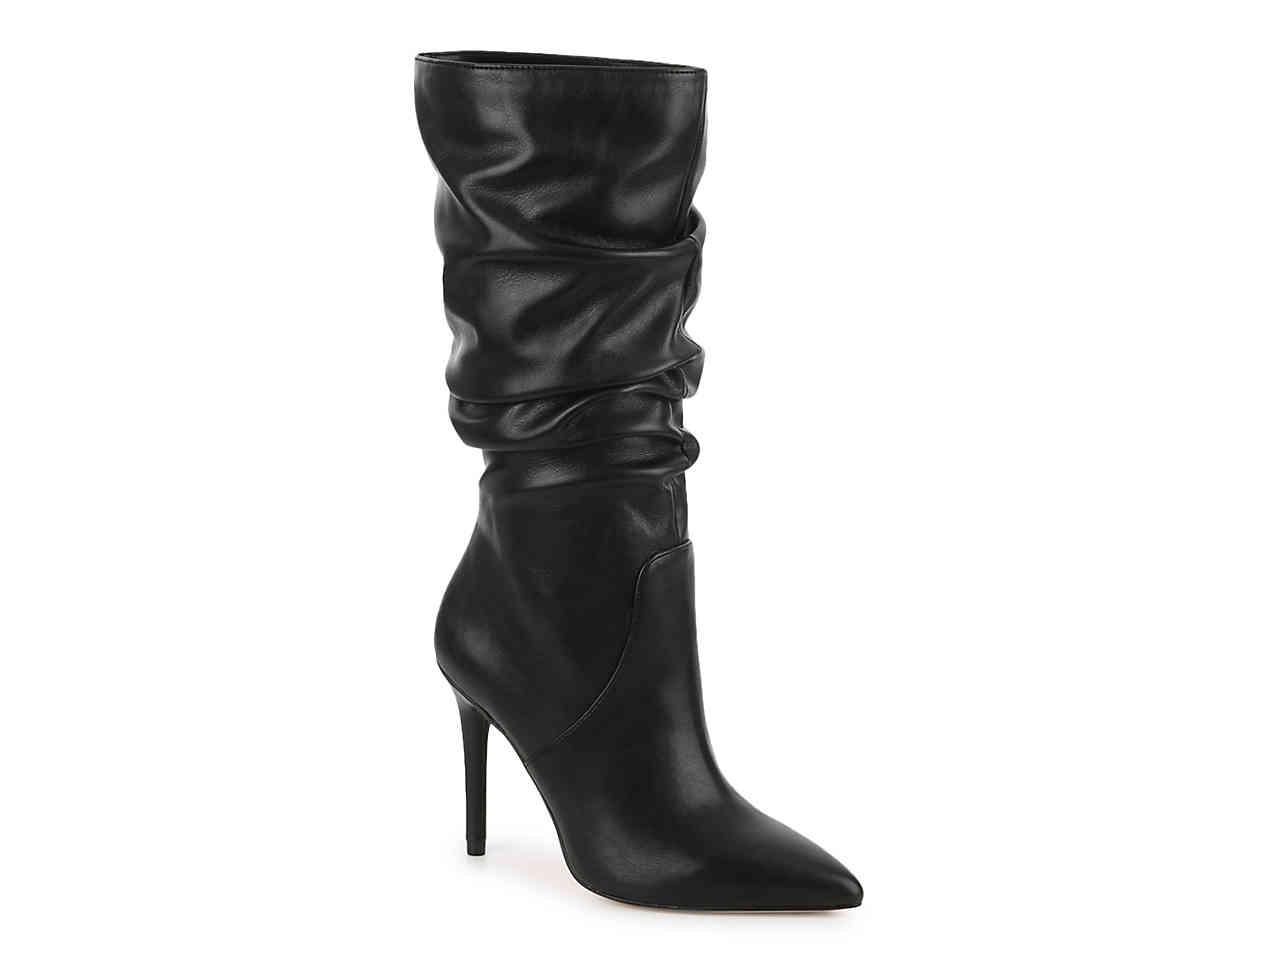 Jessica Simpson Saffrina Boot in Black 